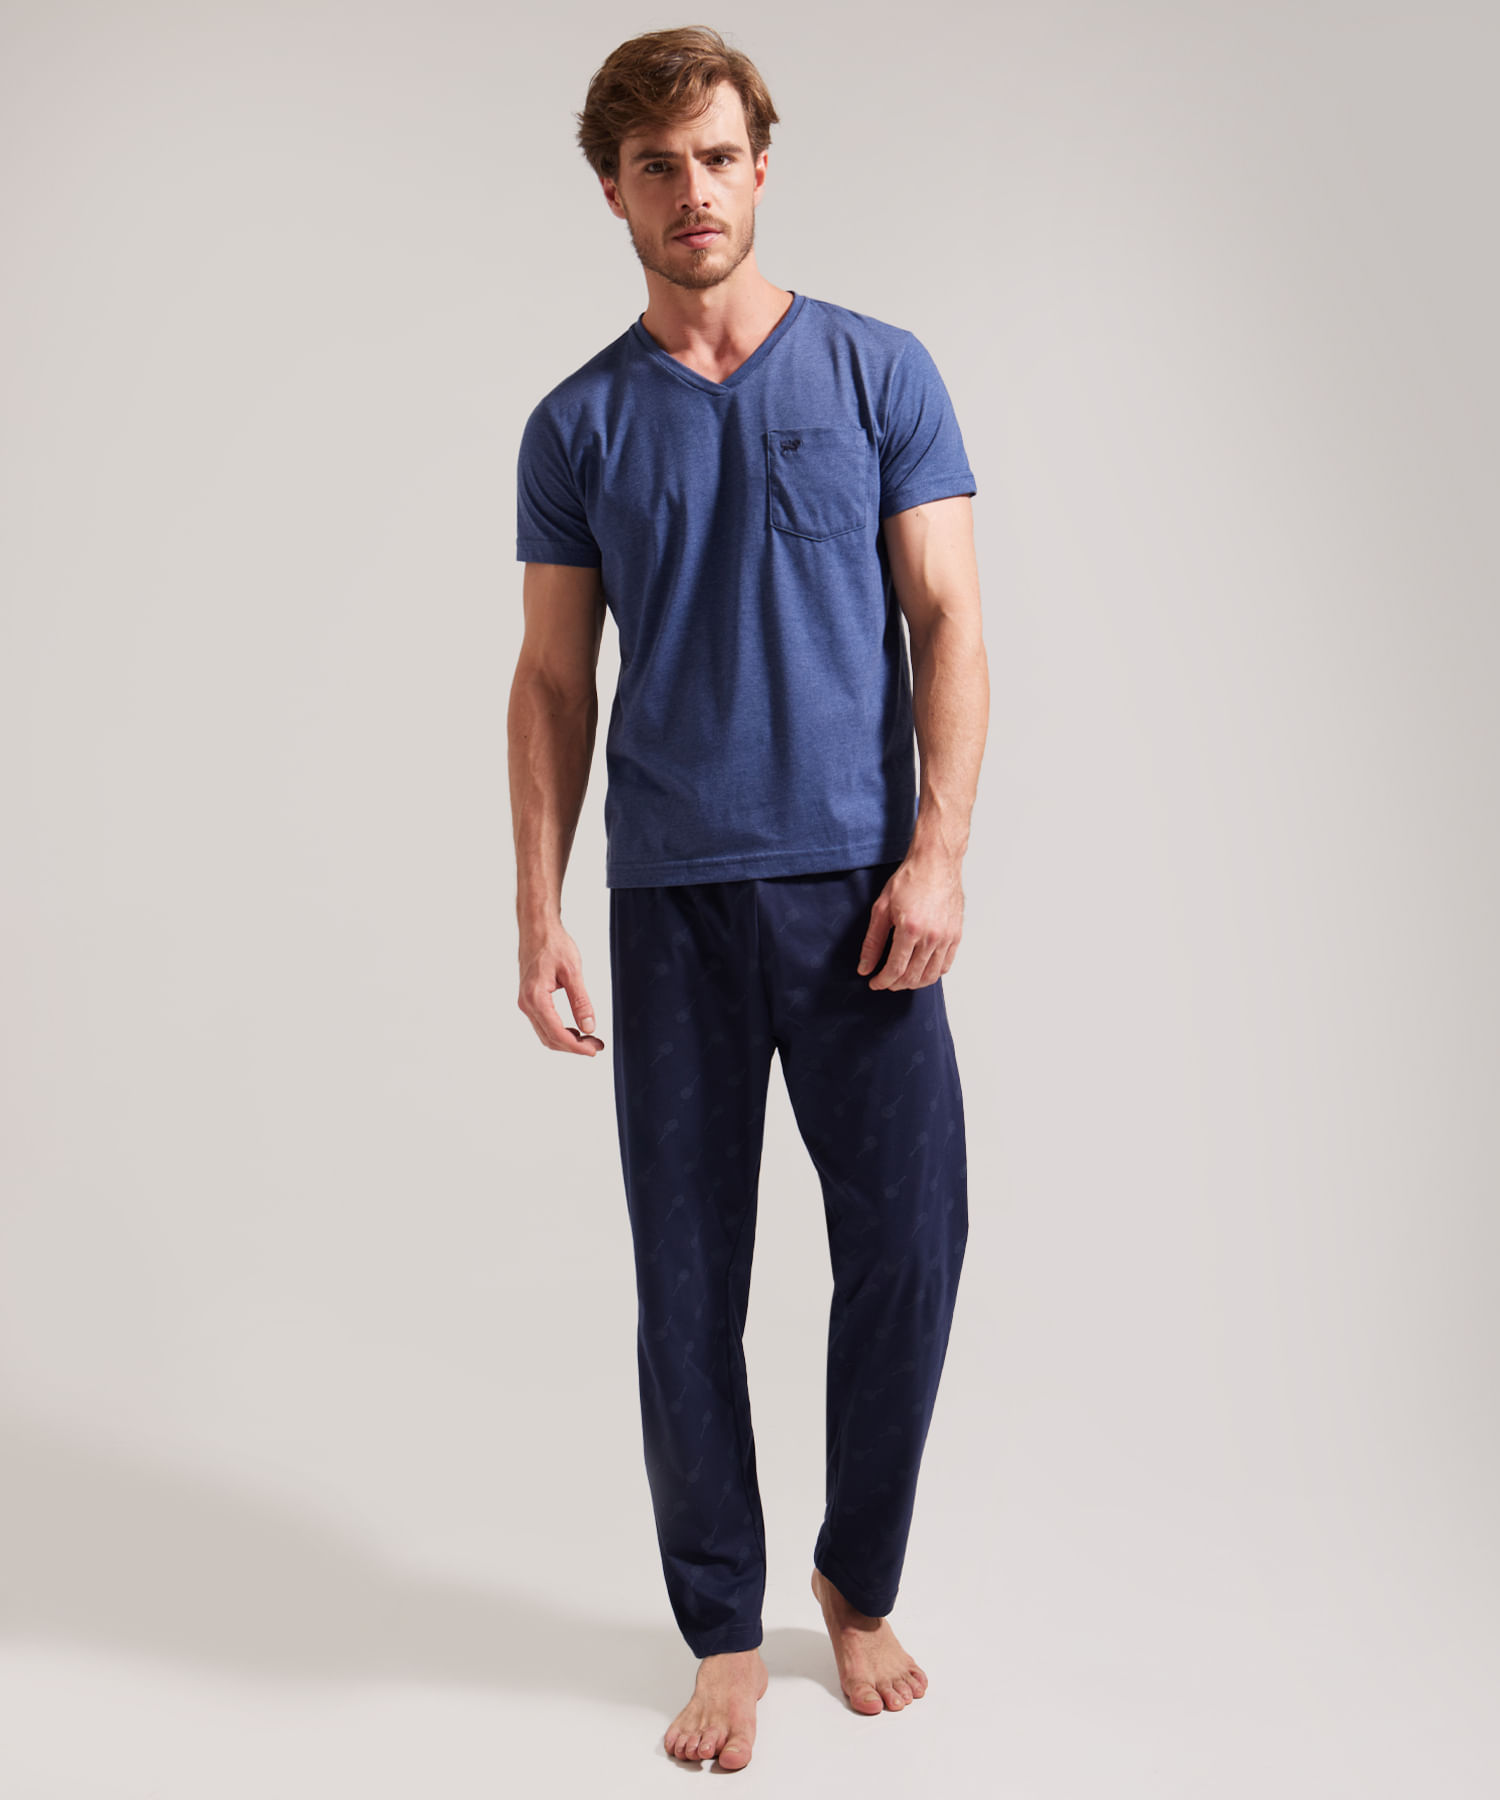 L-5XL Talla Camisa Manga Corta y Pantalones Pijama Cómodo Set para Hombre  Nuevo